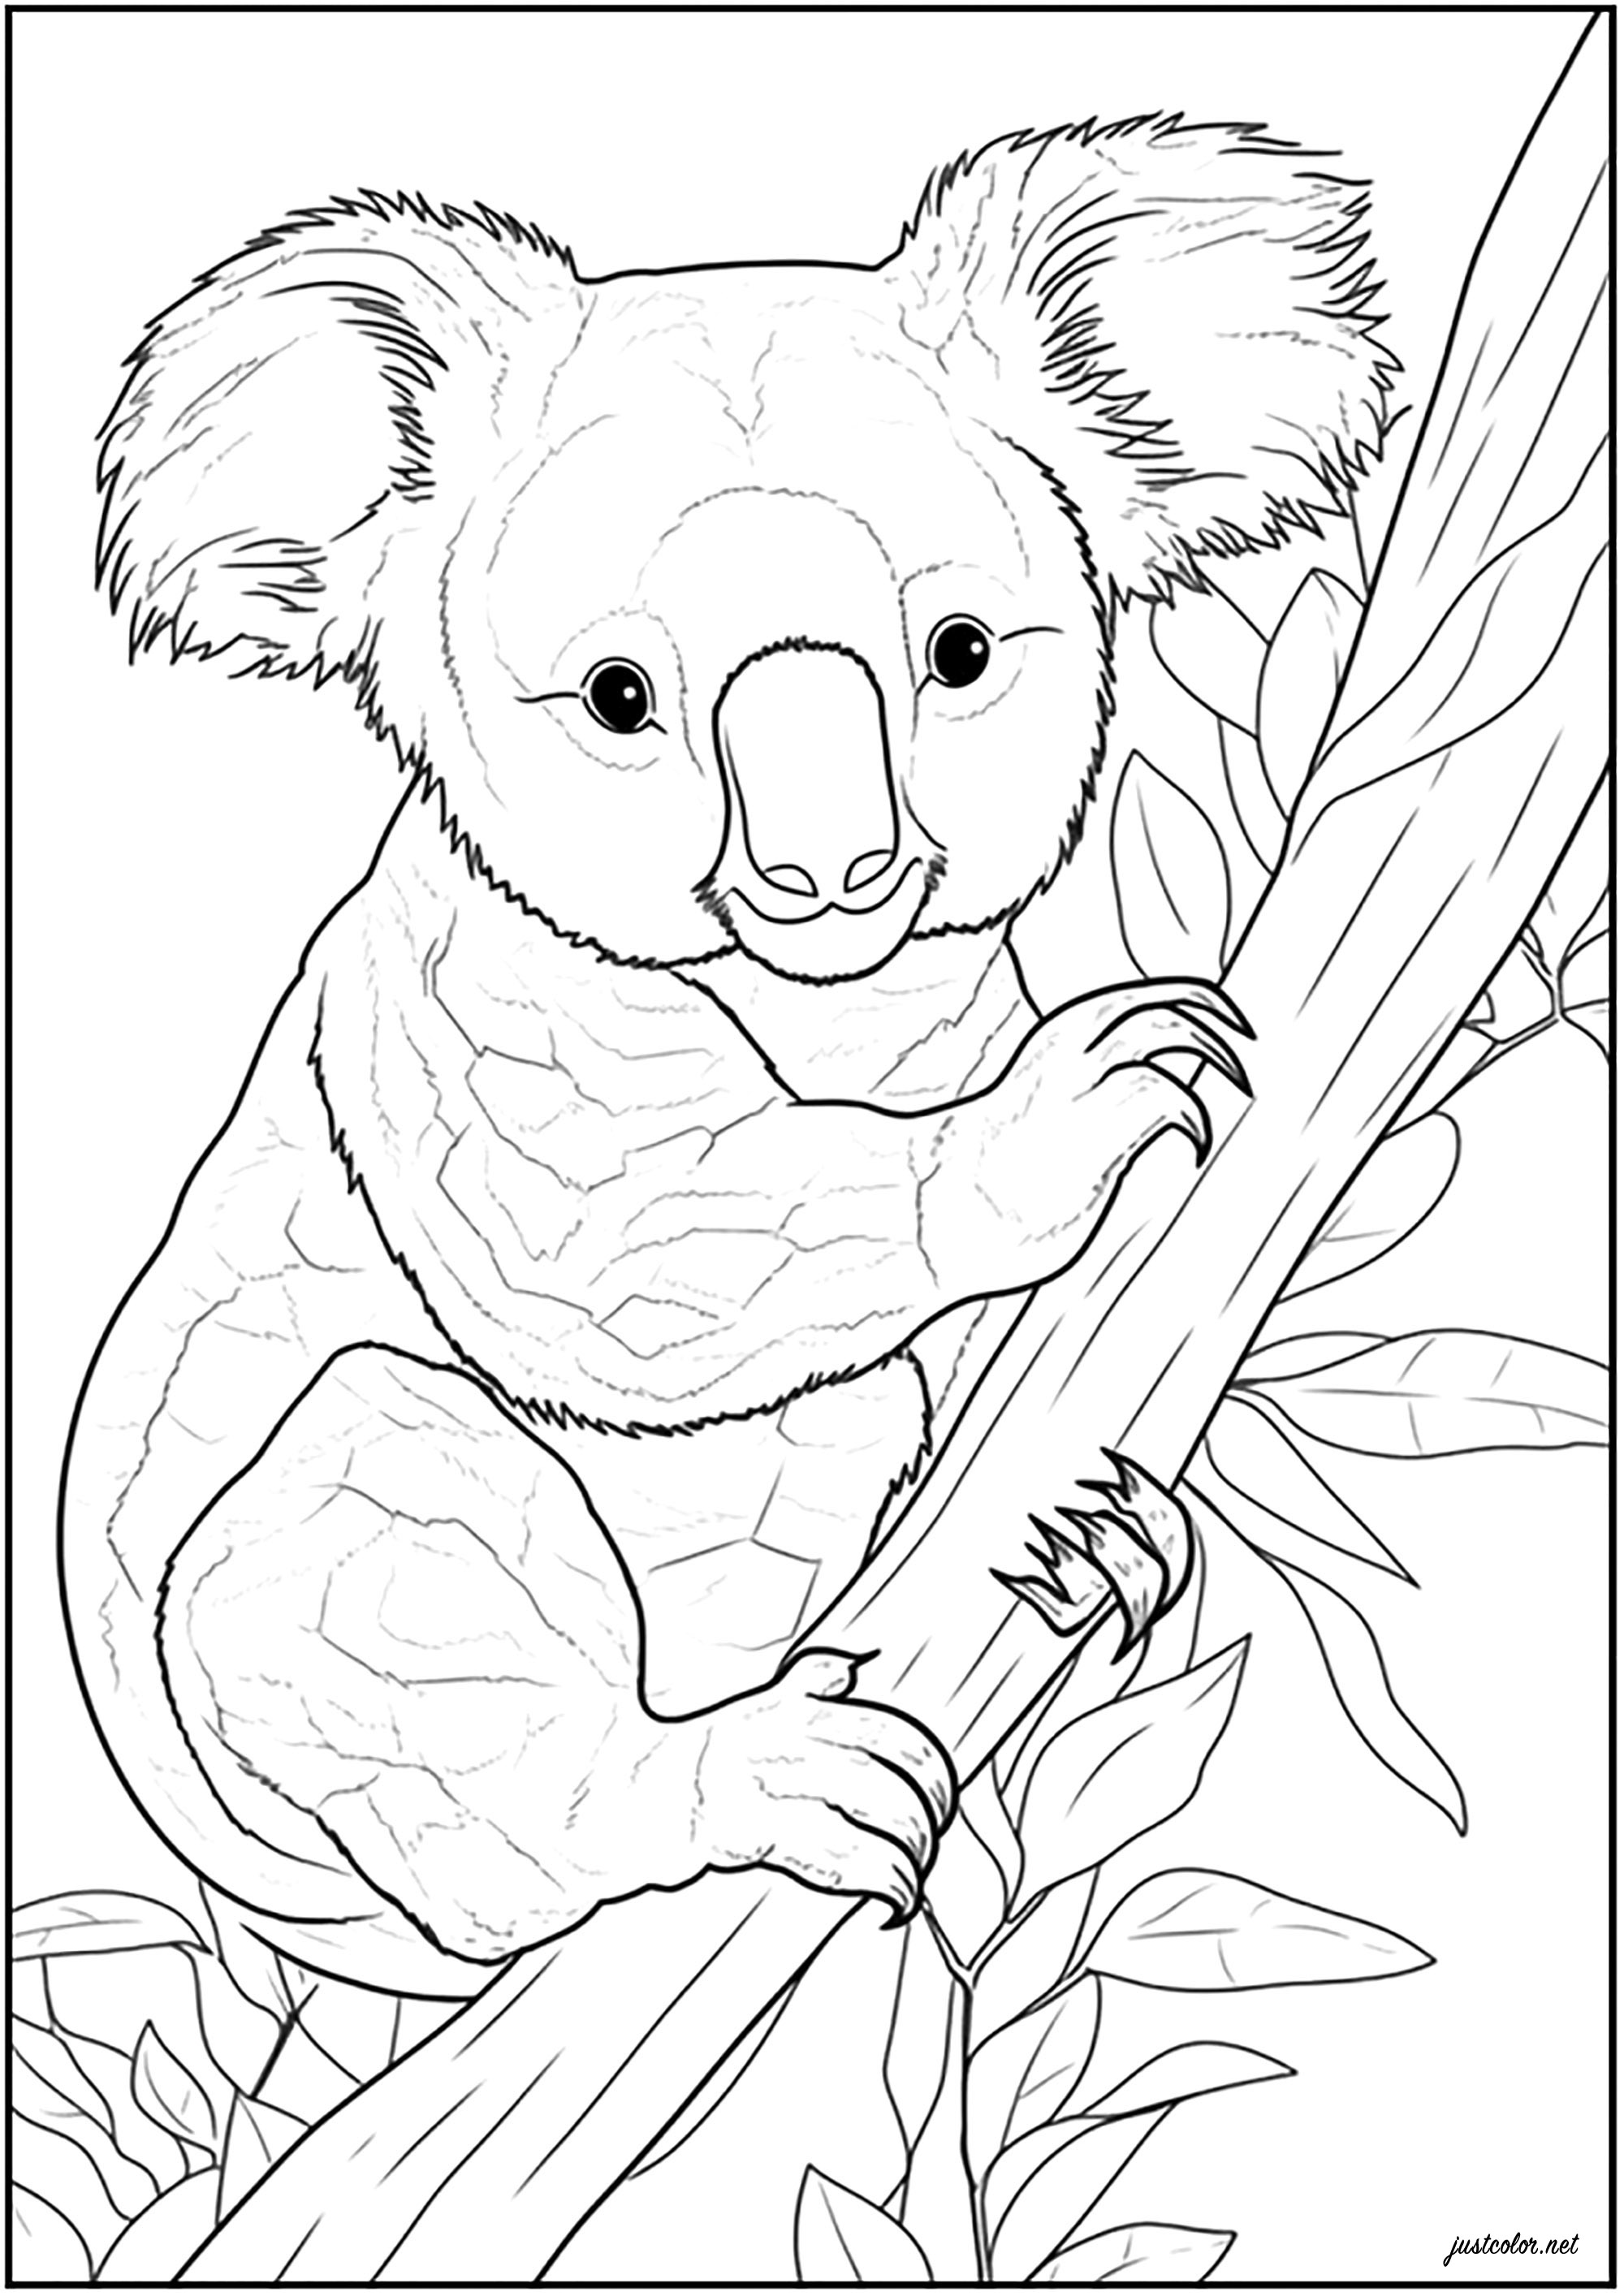 Increíble Dibujos para colorear de Osos Koala para descargar